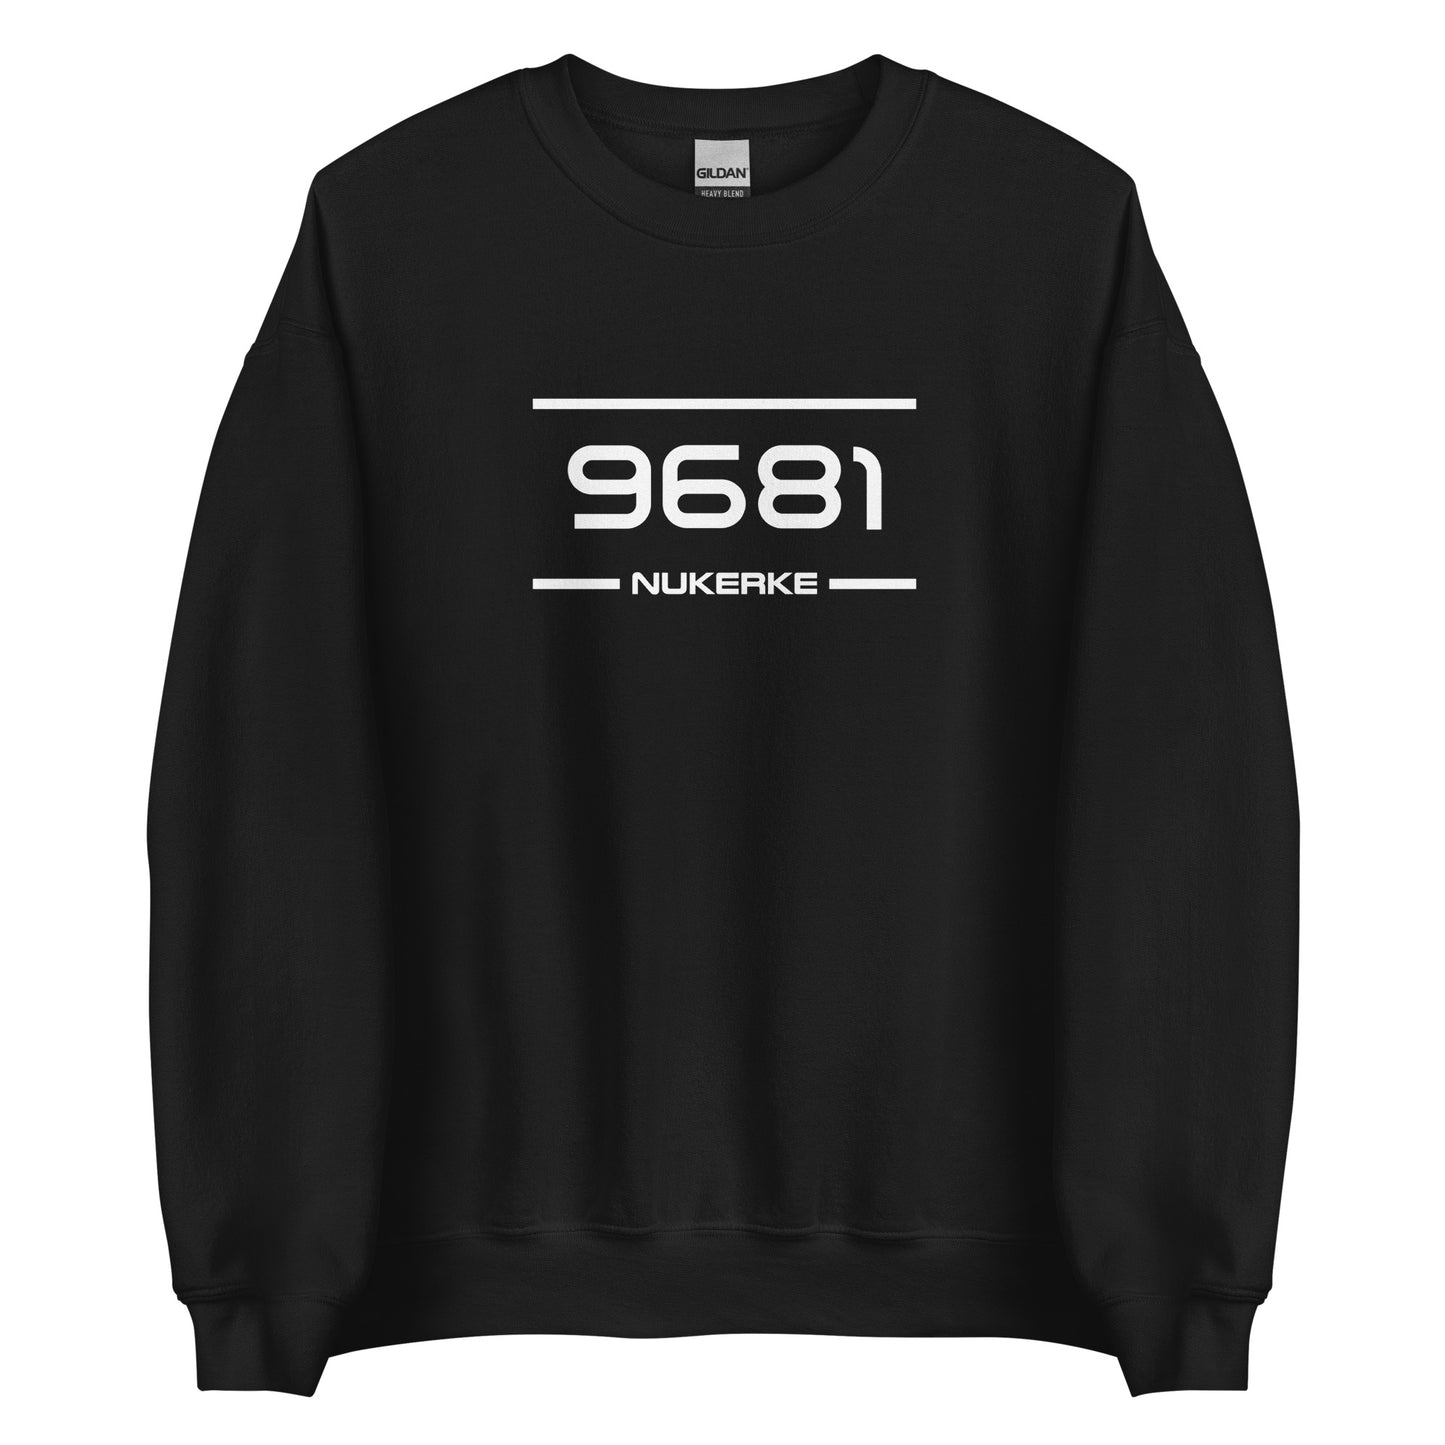 Sweater - 9681 - Nukerke (M/V)